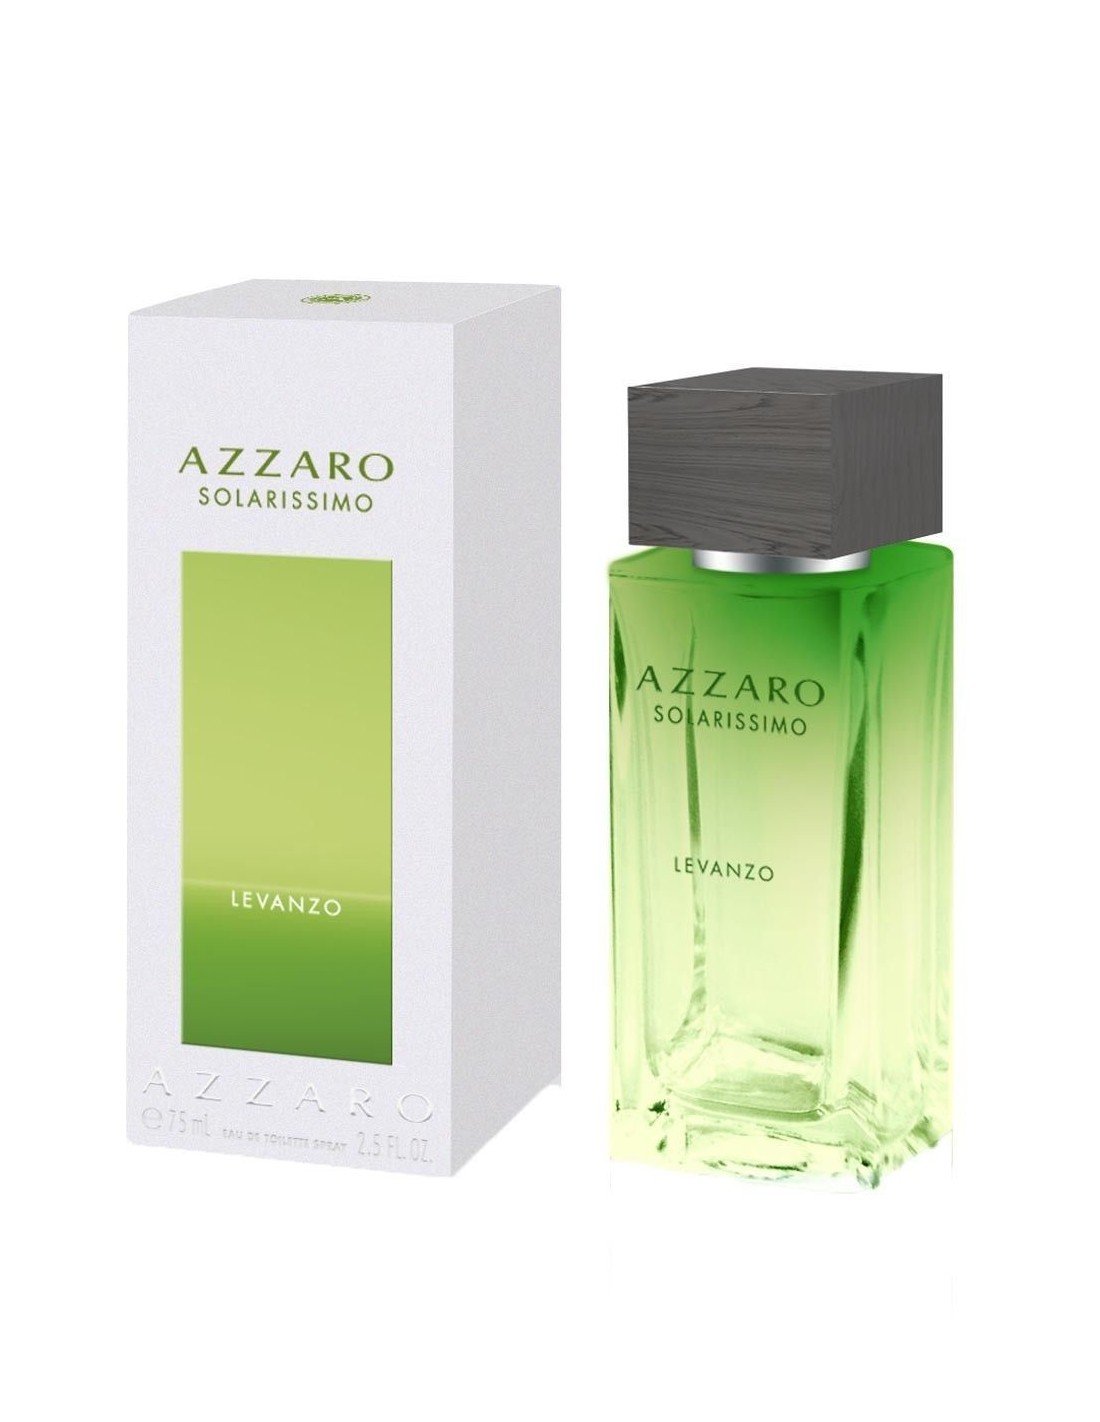 Perfume Azzaro Solarissimo Levanzo Edt 75ml Hombre